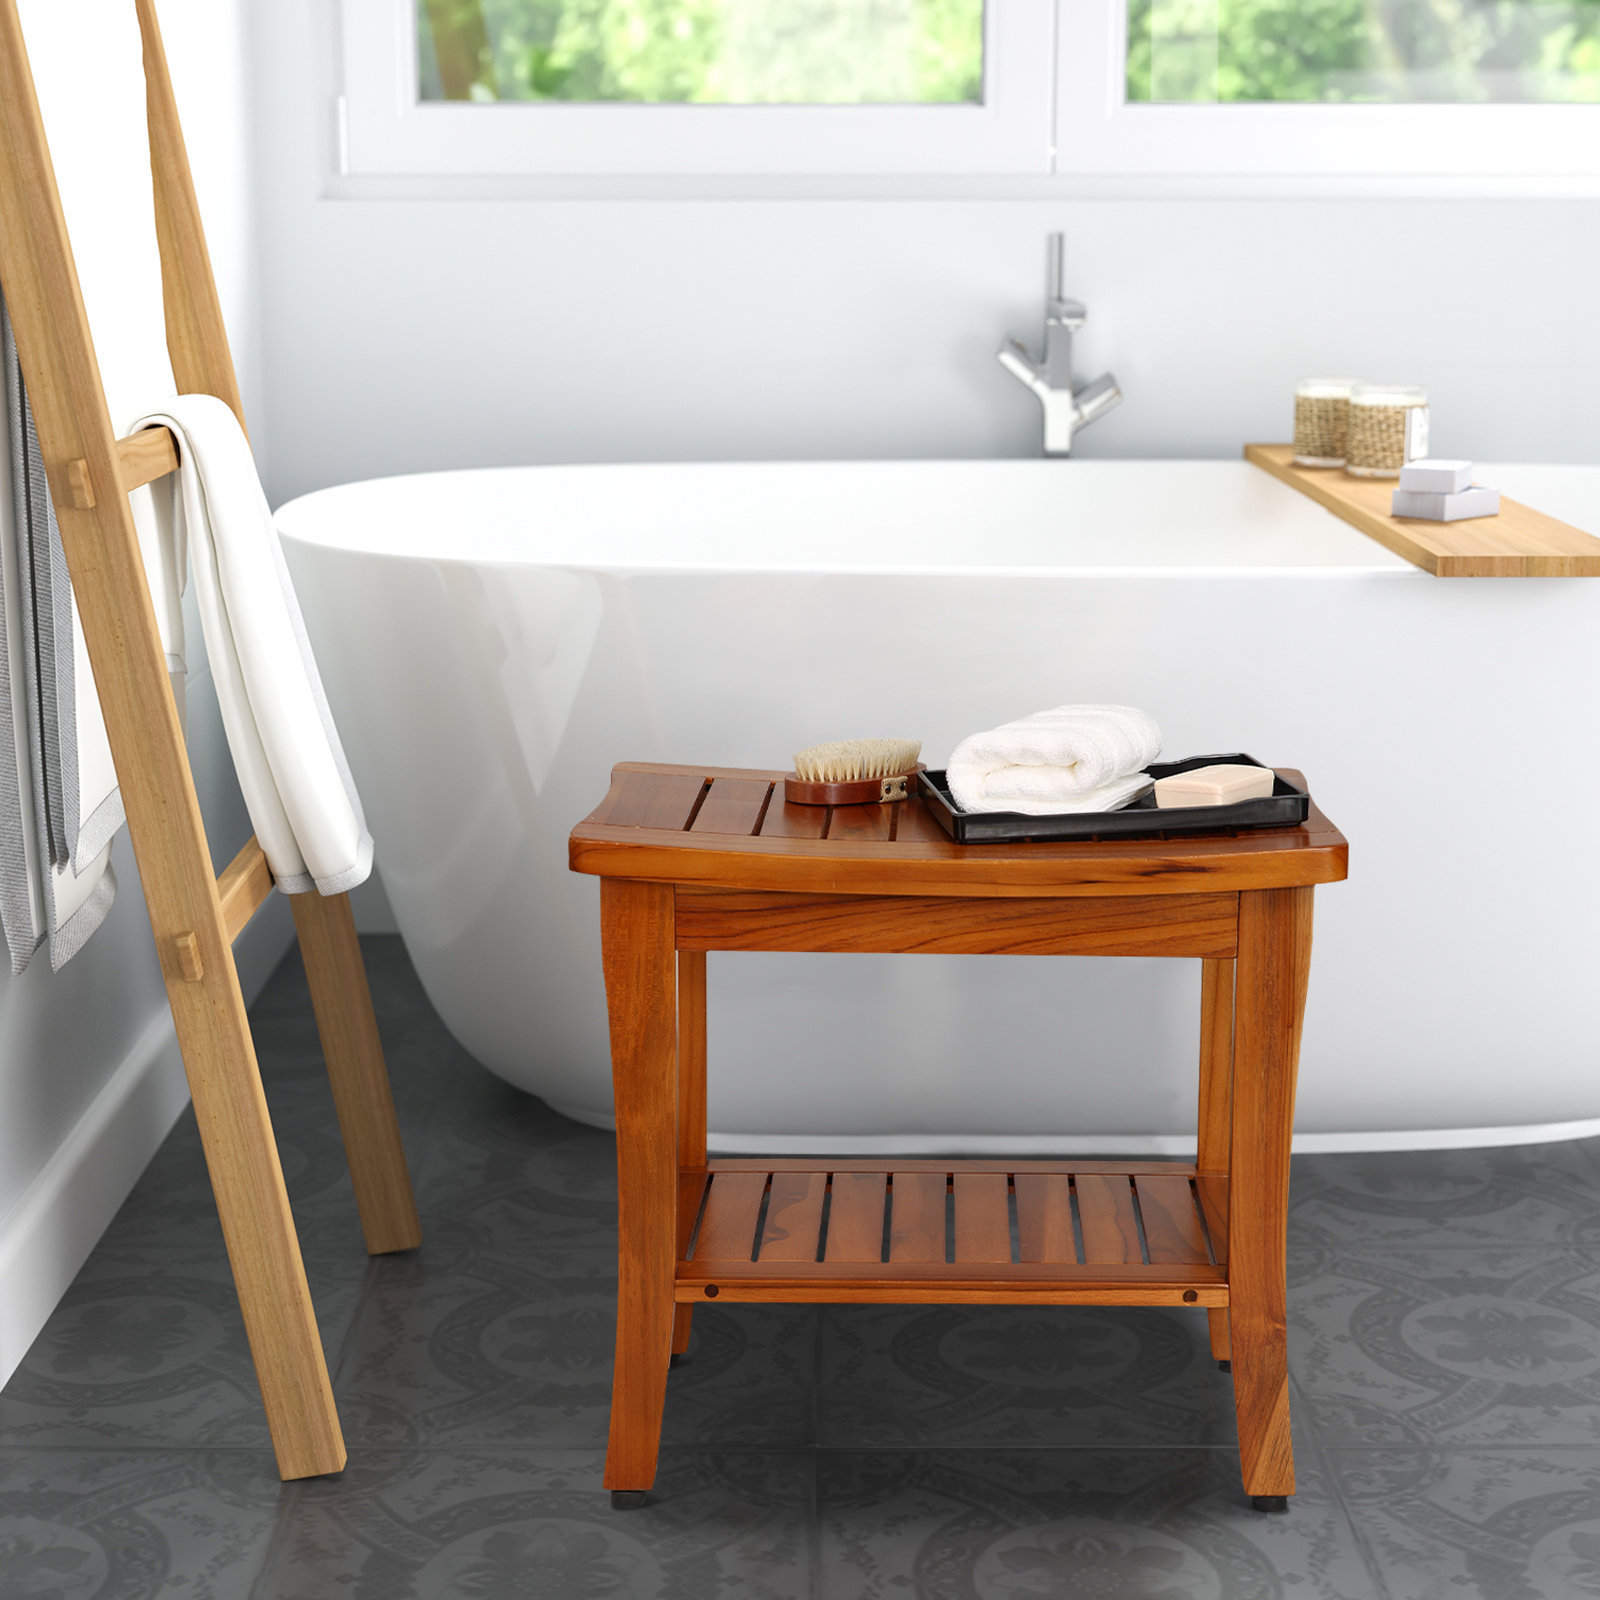 Wooden Floor Mat Wood Bathroom Mat for Indoor & Outdoor, Easy to Clean  Shower Mat Non-Slip Floor Mat for Shower, Bathtub, Spa, Sauna, Entryway,  Pool